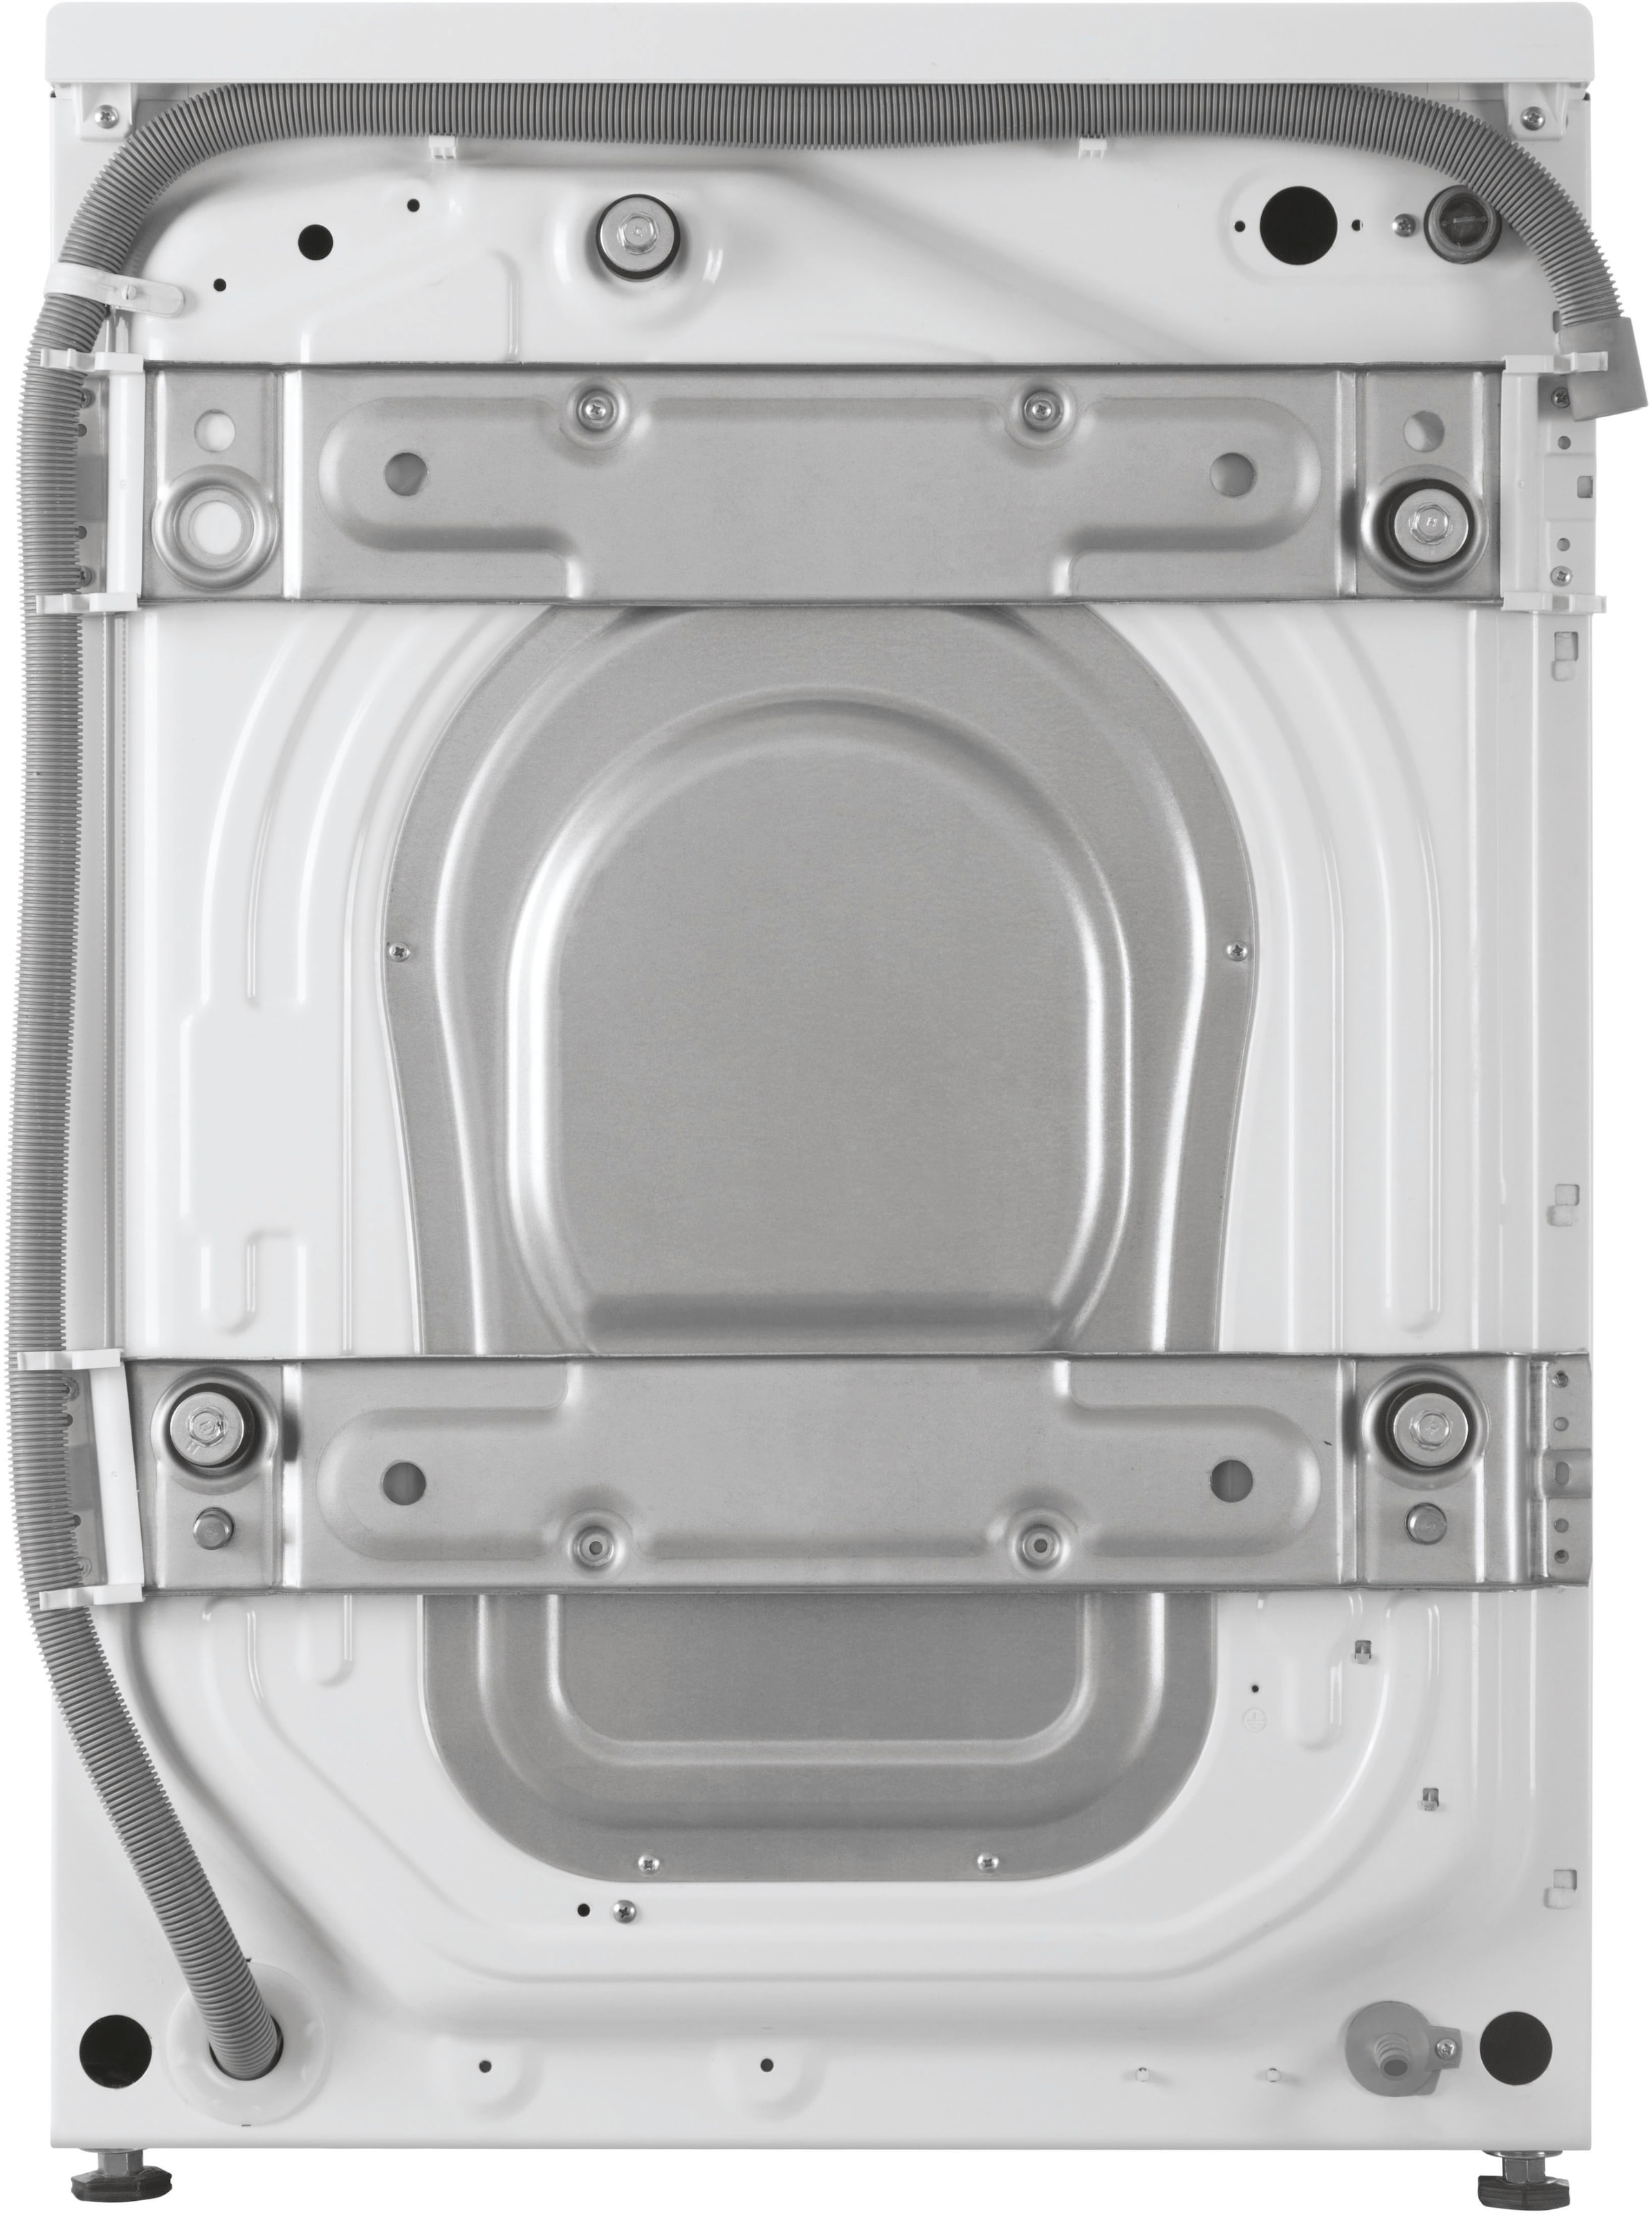 Haier Waschmaschine »HW110-B14979U1«, HW110-B14979U1, 11 kg, 1400 U/min, Super leiser und effizienter Direct Motion Motor